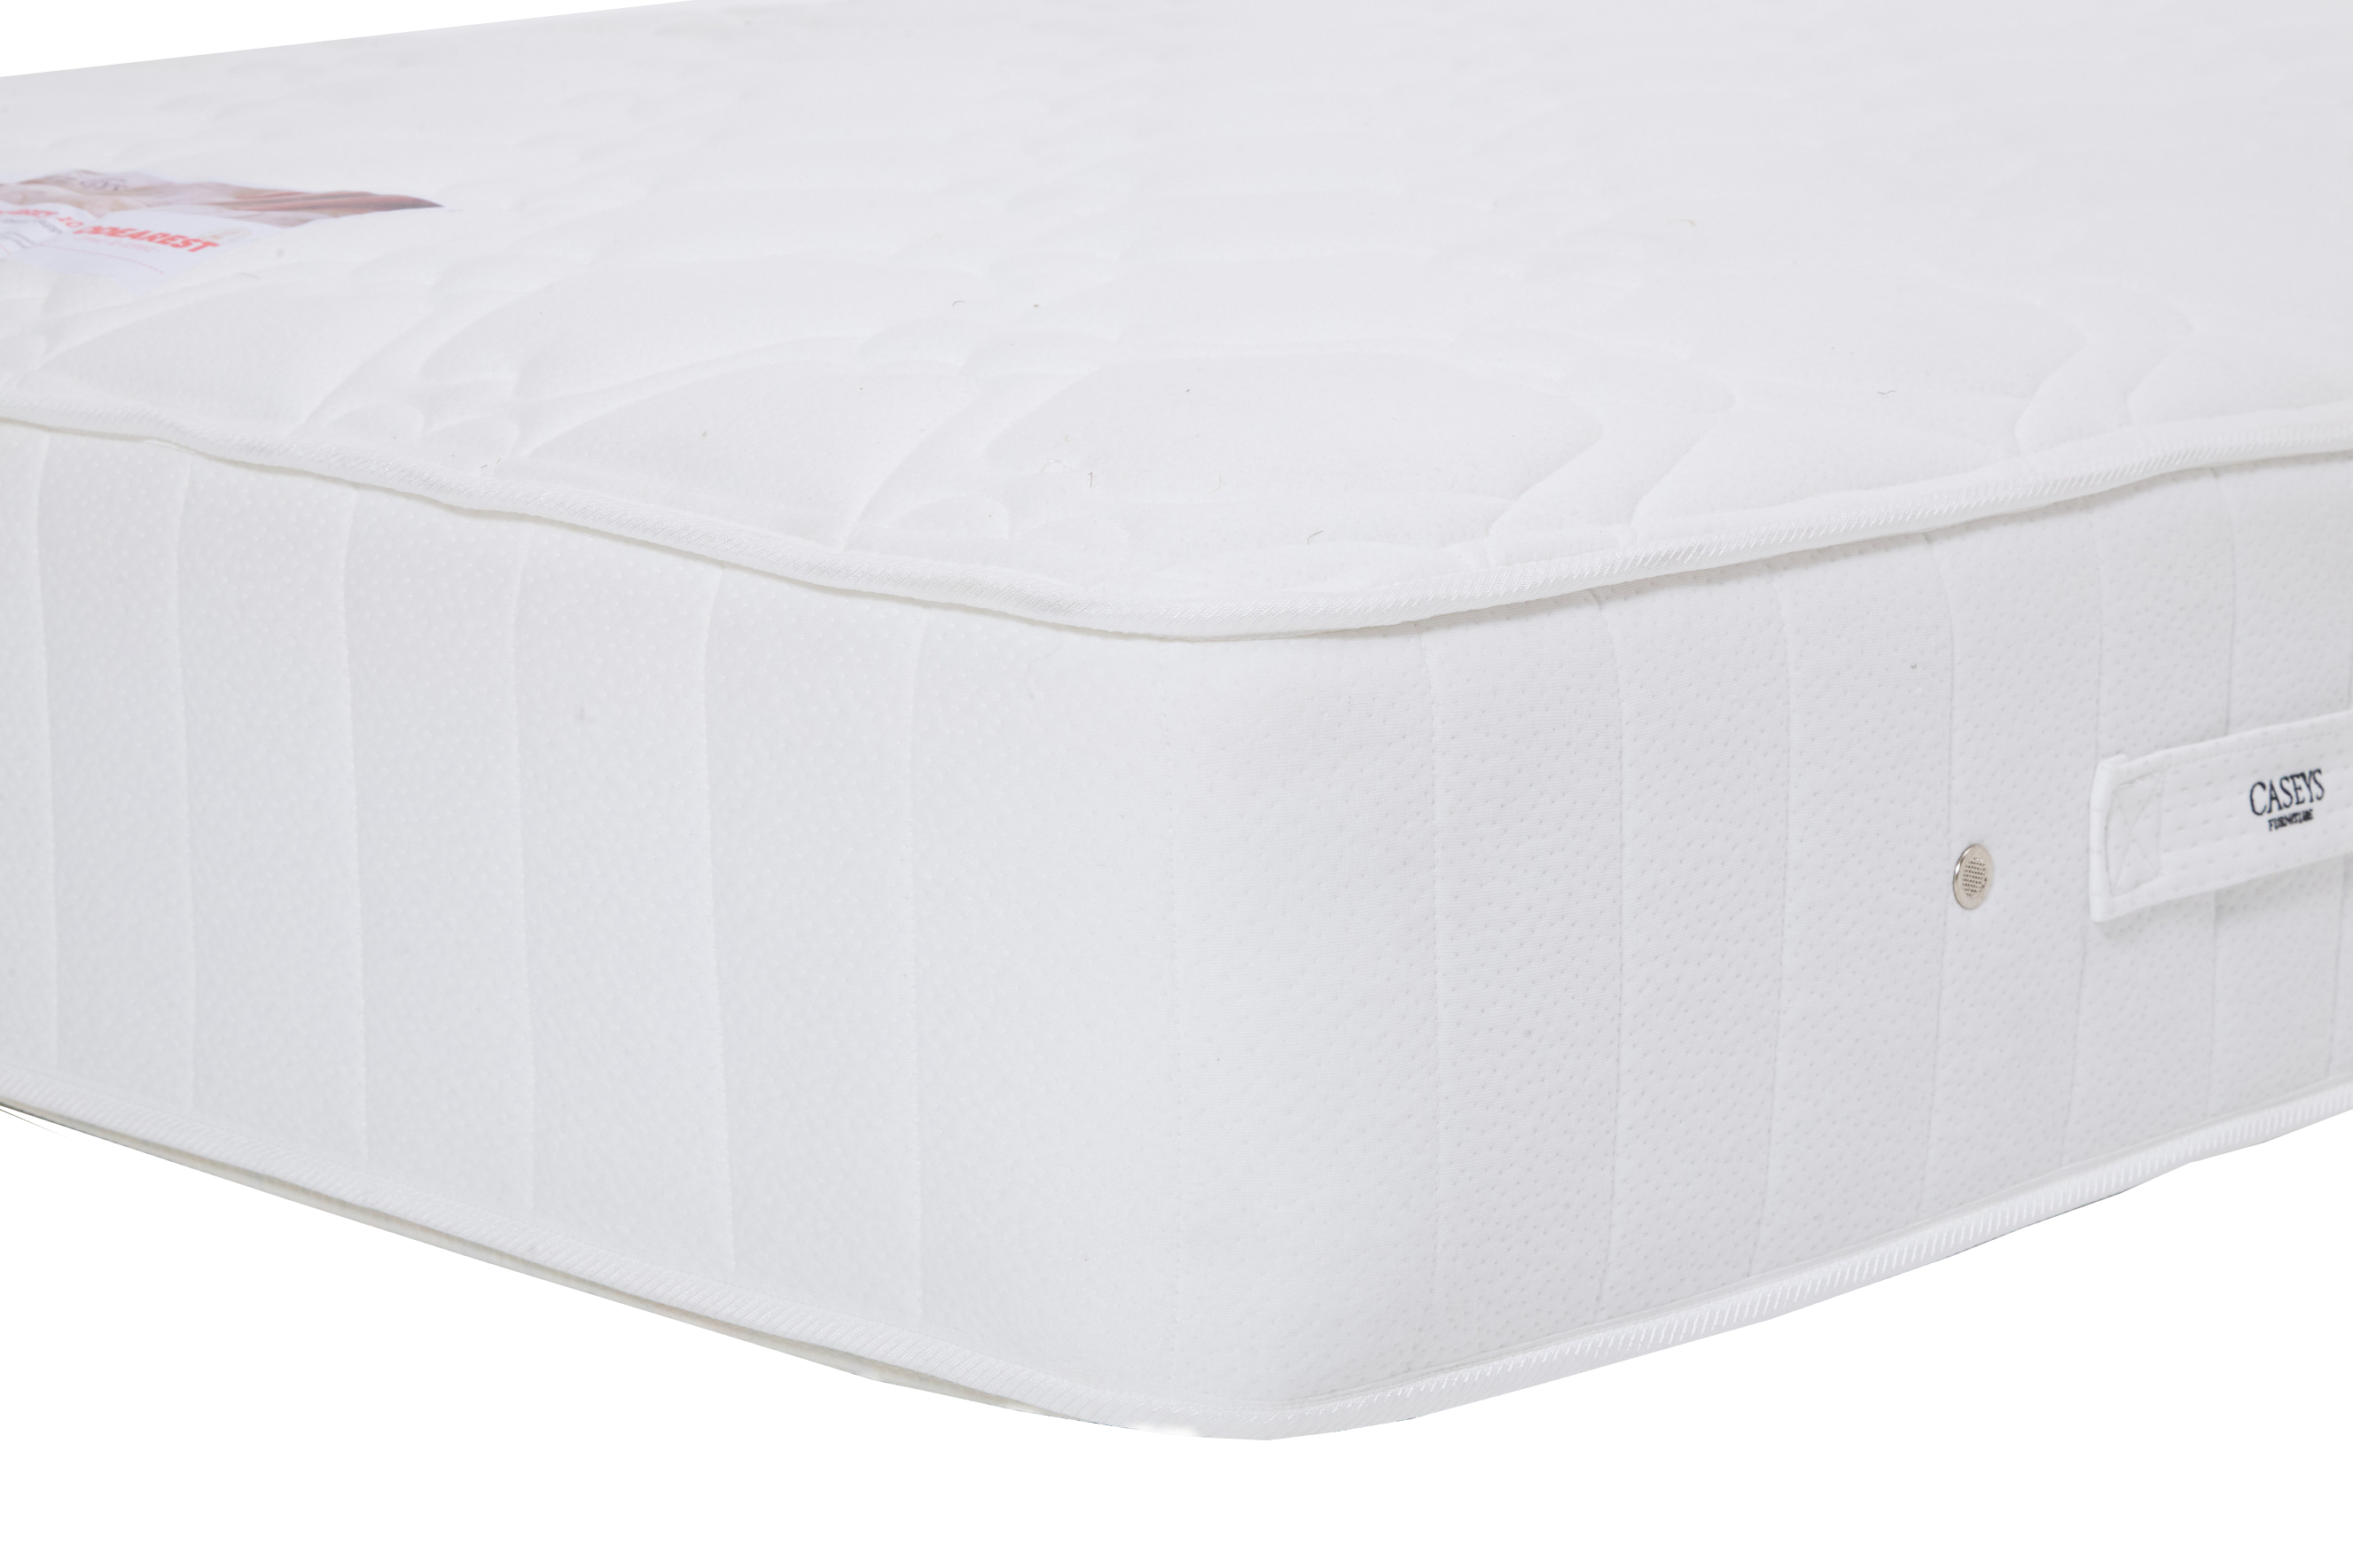 odearest powerscourt mattress review